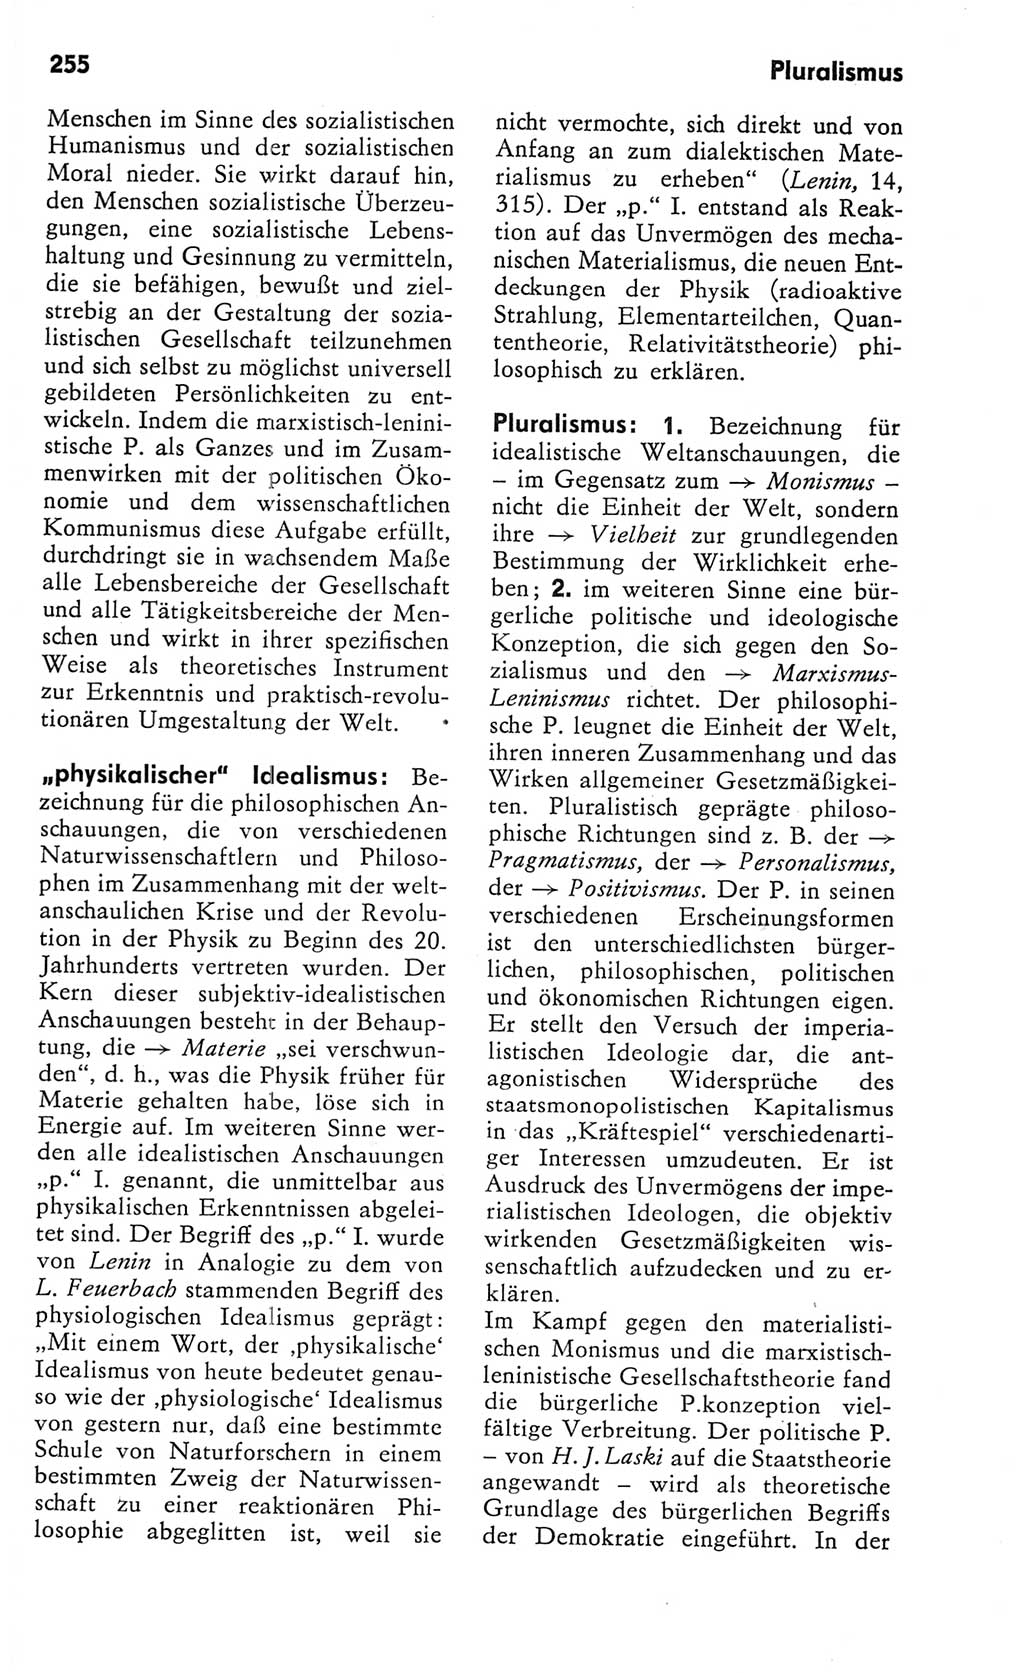 Kleines Wörterbuch der marxistisch-leninistischen Philosophie [Deutsche Demokratische Republik (DDR)] 1982, Seite 255 (Kl. Wb. ML Phil. DDR 1982, S. 255)